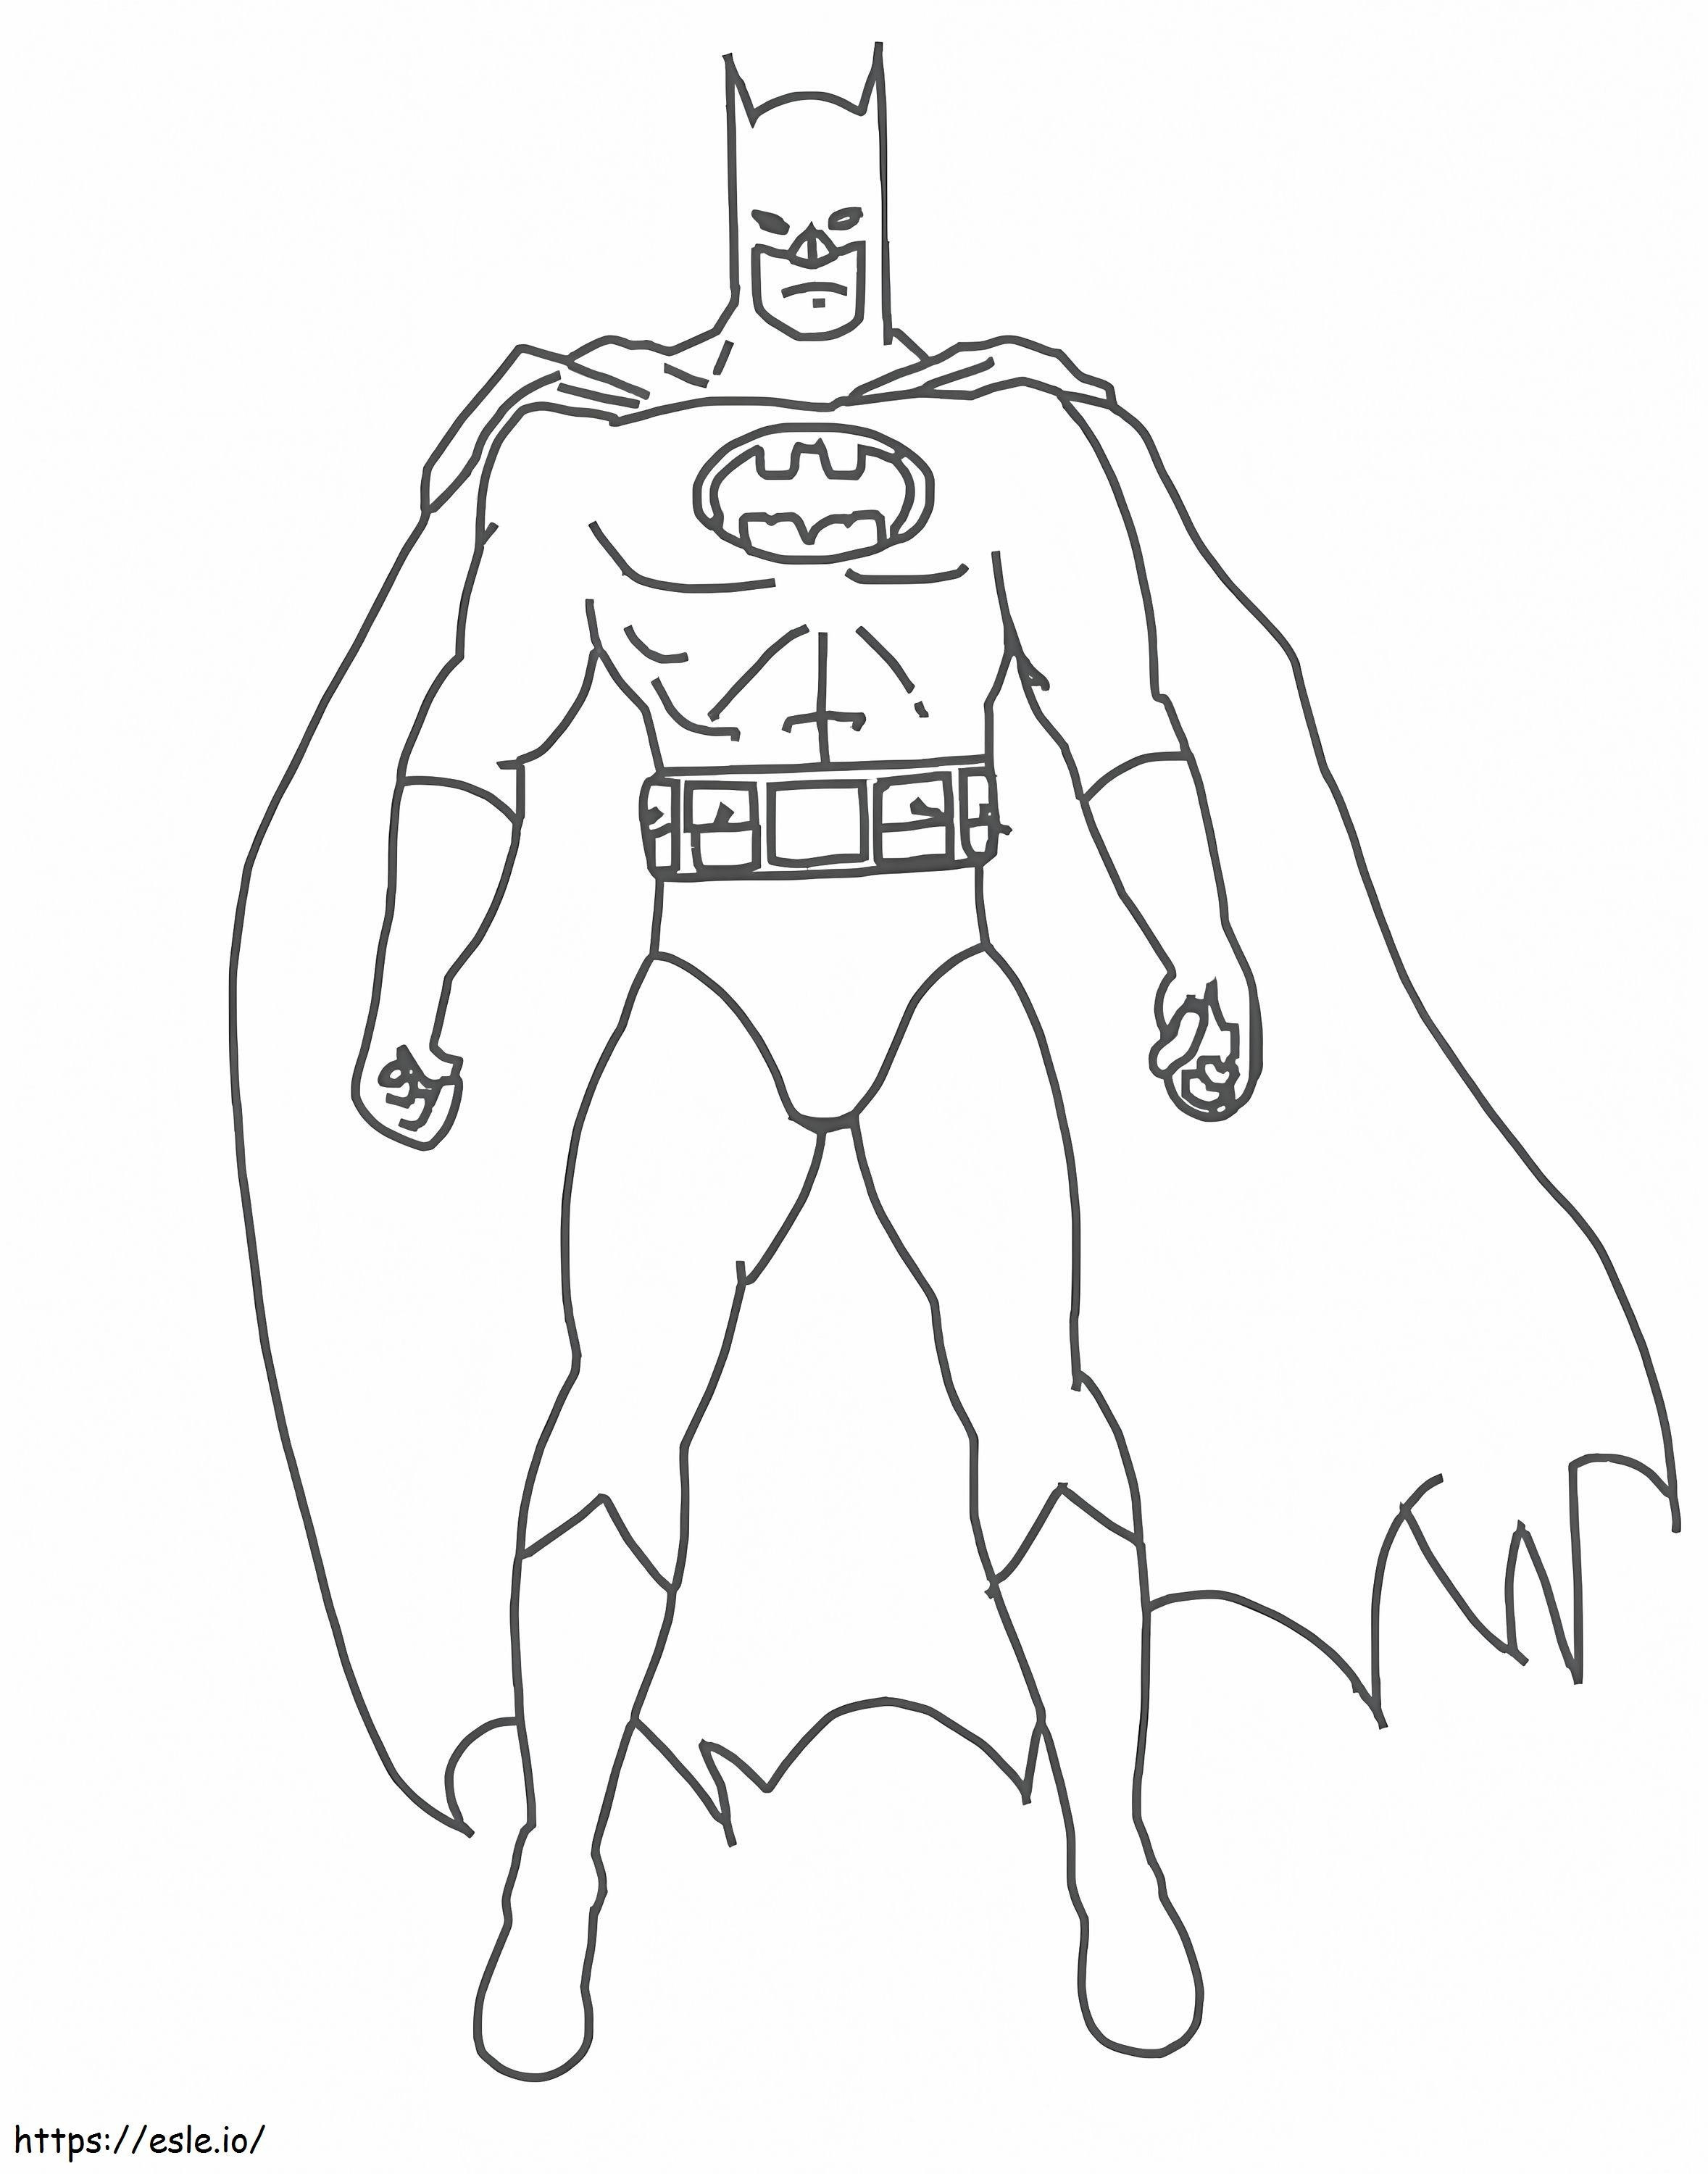 Easy Batman coloring page